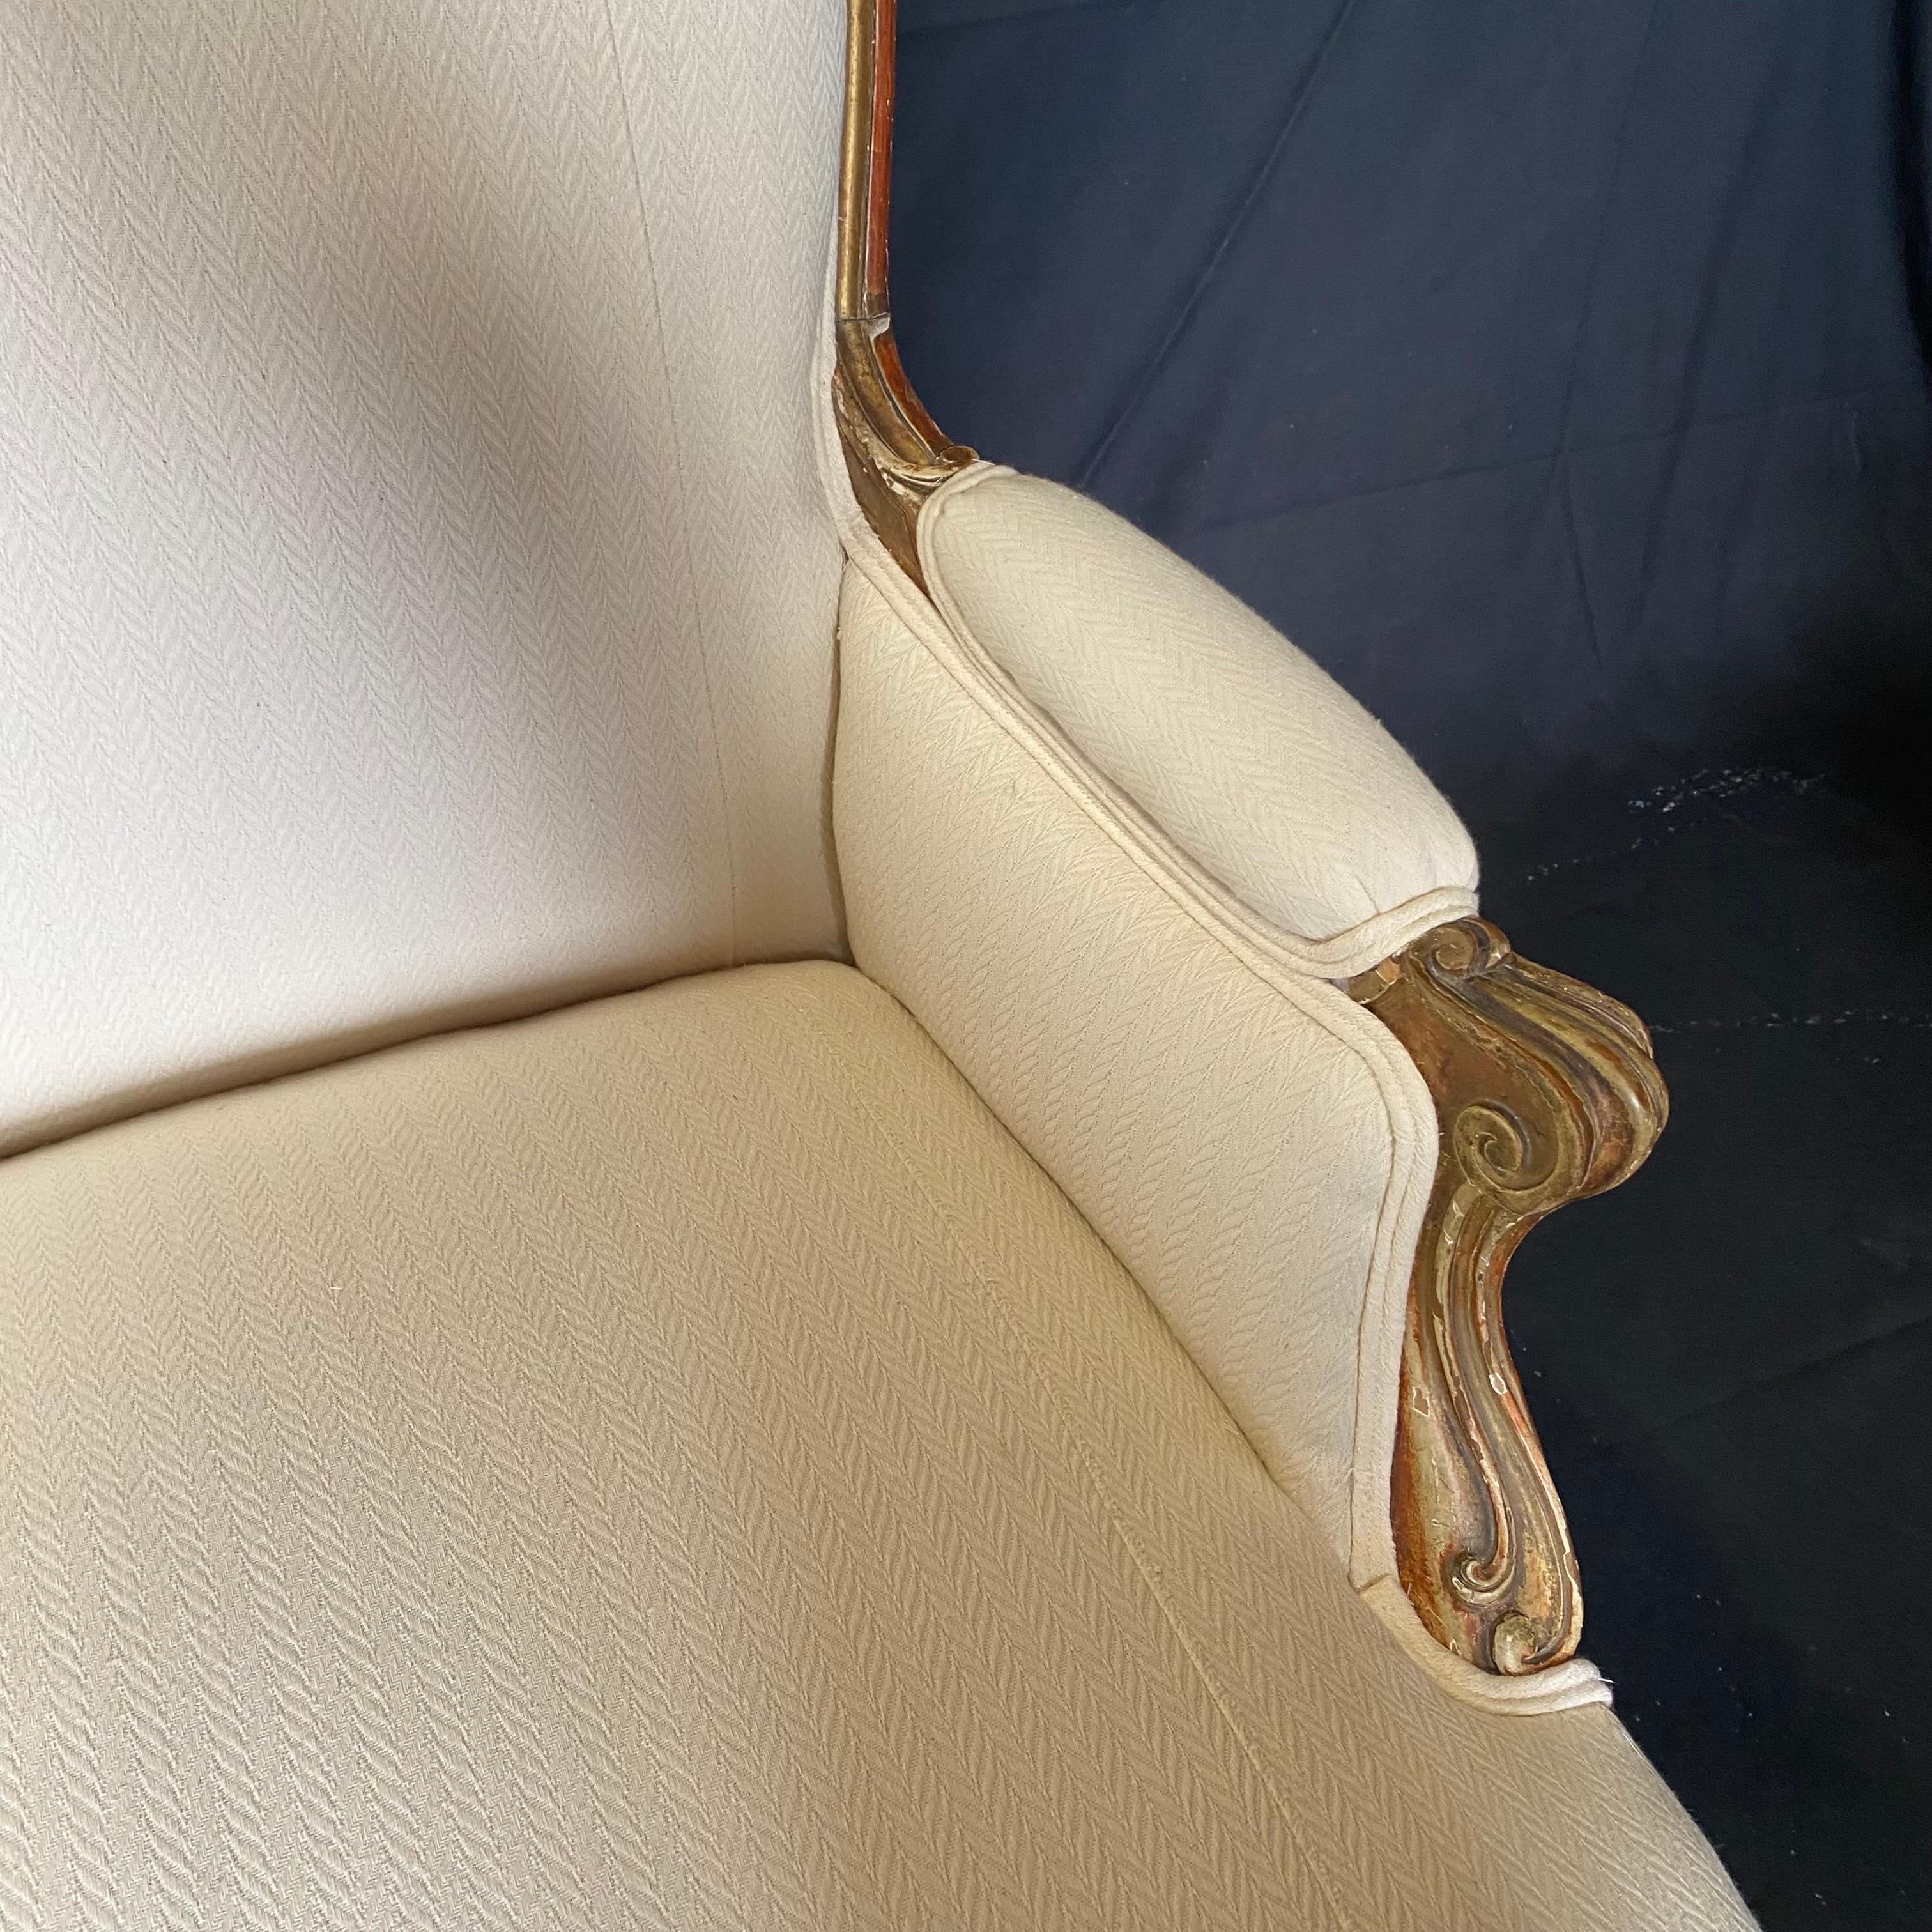 Hochwertiges, elegantes französisches Louis XV-Canape, -Sofa oder -Sitzmöbel aus dem 19. Jahrhundert, neu gepolstert mit cremefarbenem Stoff.   Er hat einen wunderschön geformten Rahmen aus vergoldetem Holz mit einem schönen, fließenden Rokoko-Stil,